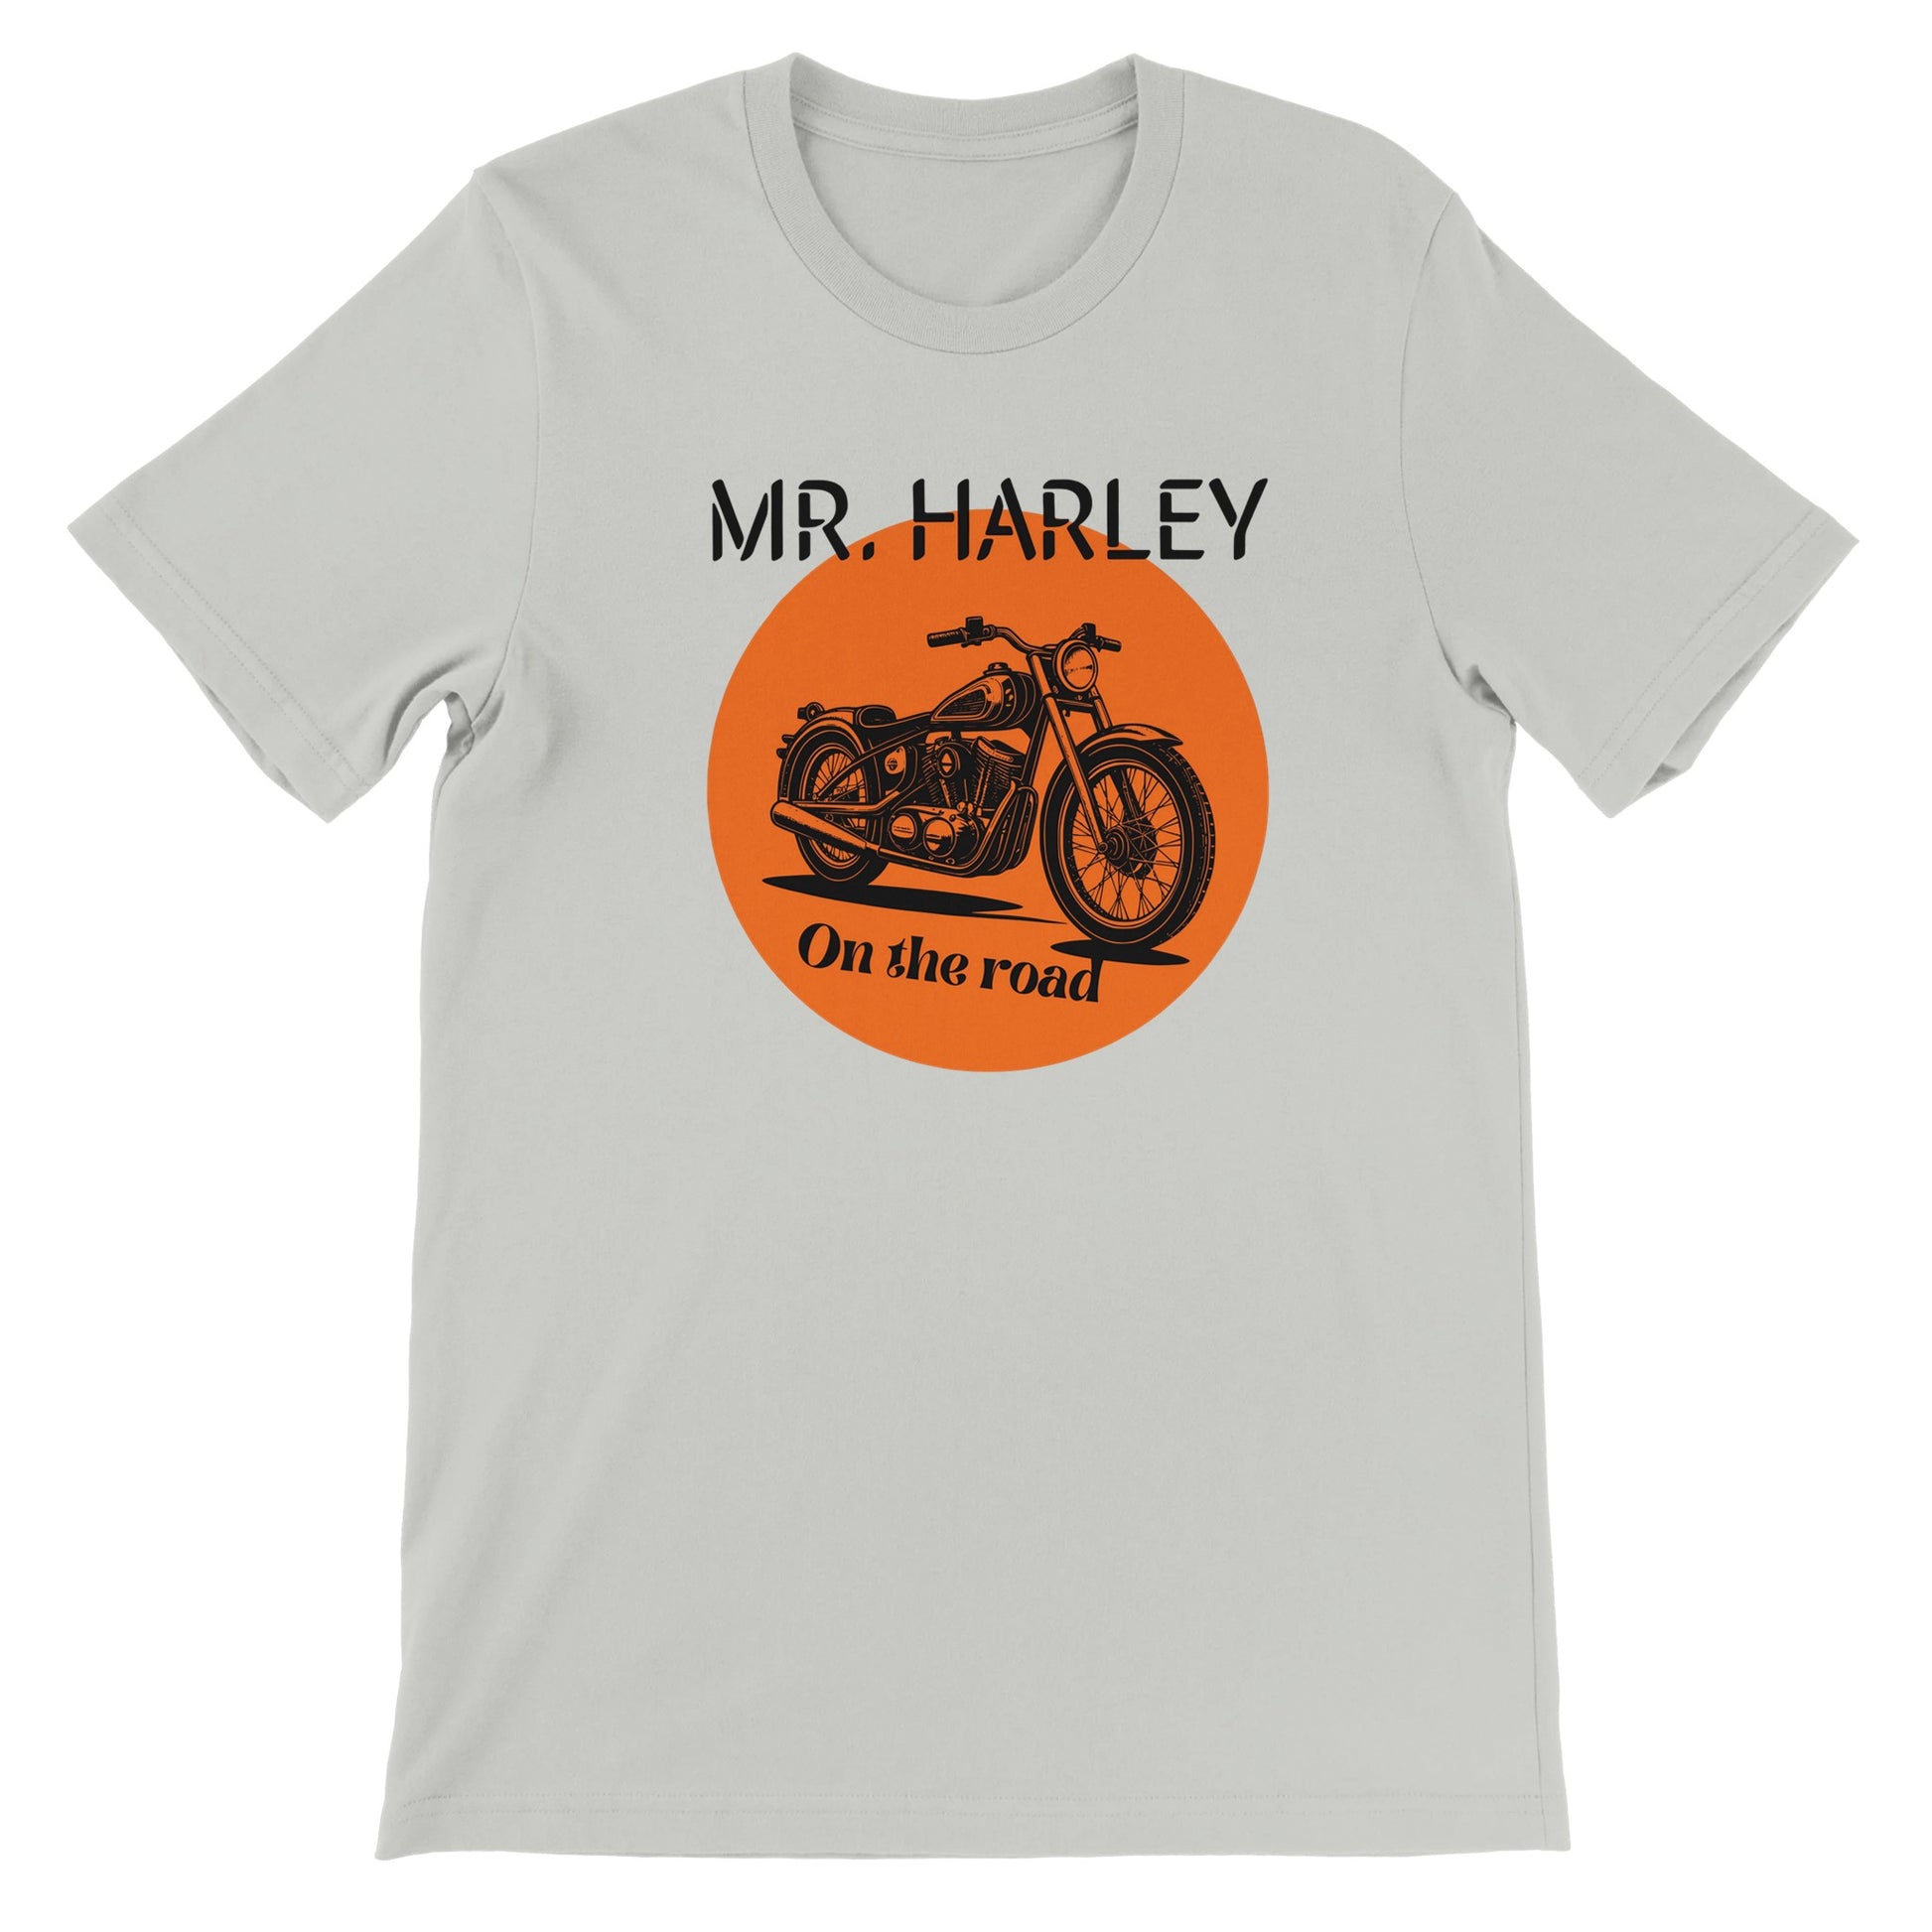 Camiseta para los amantes de las motos